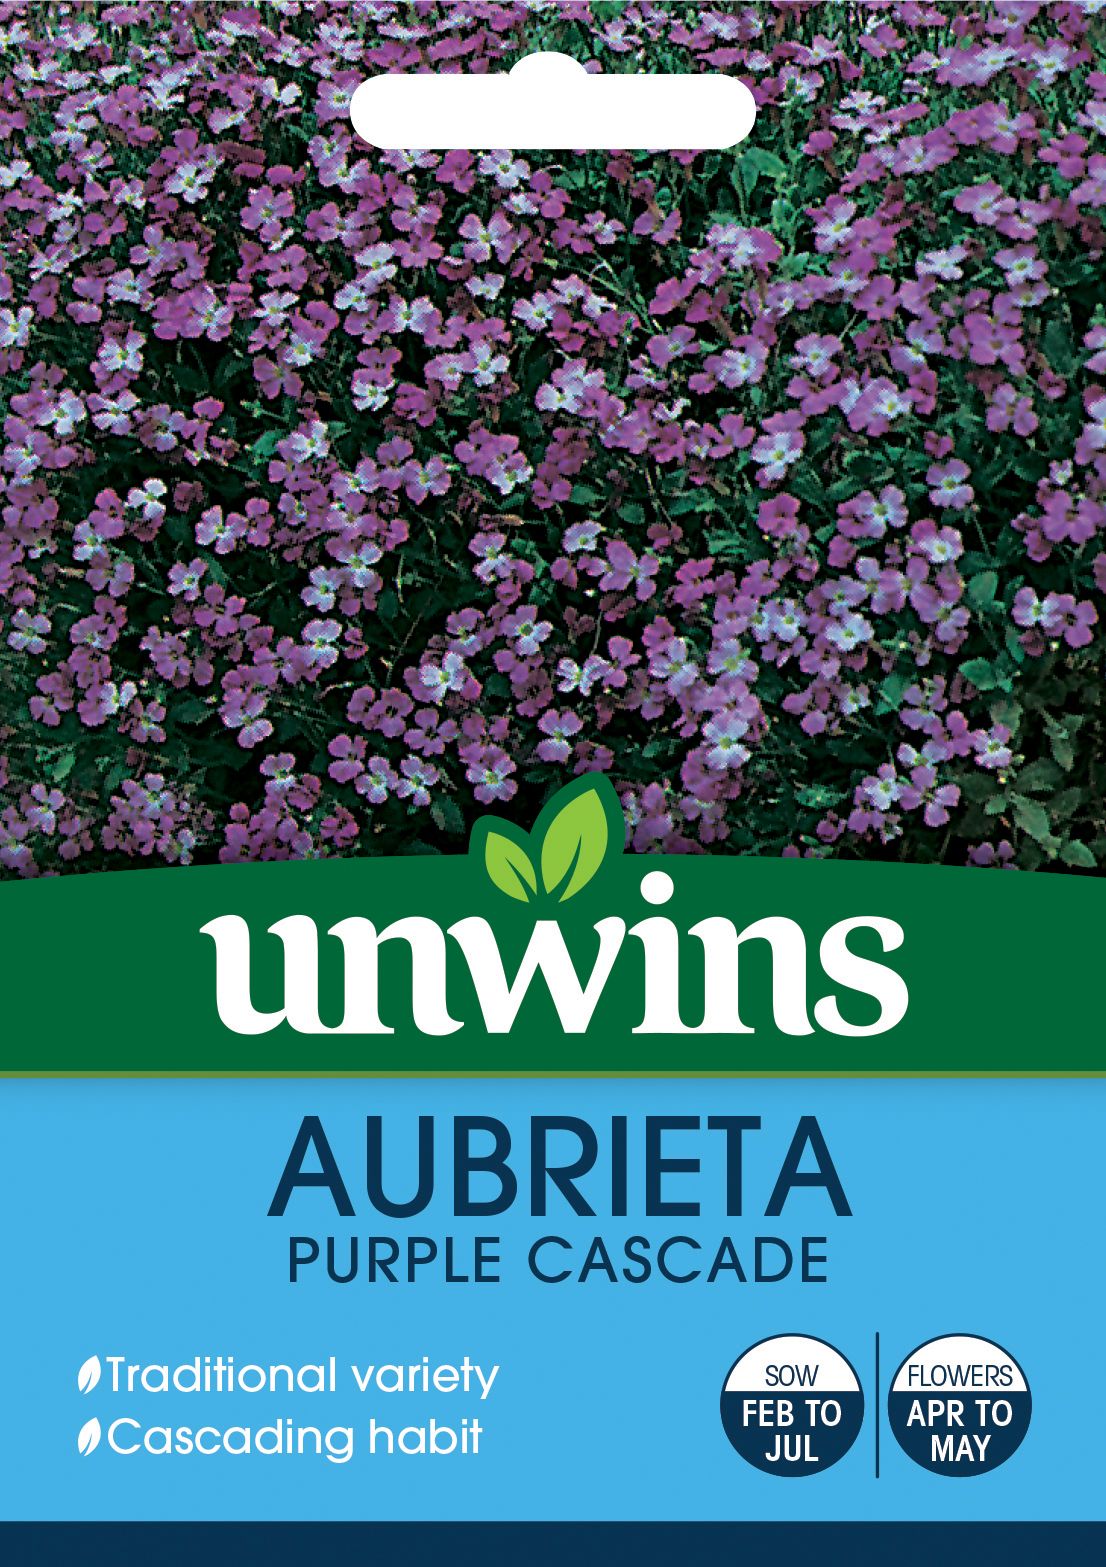 Aubrieta Purple Cascade